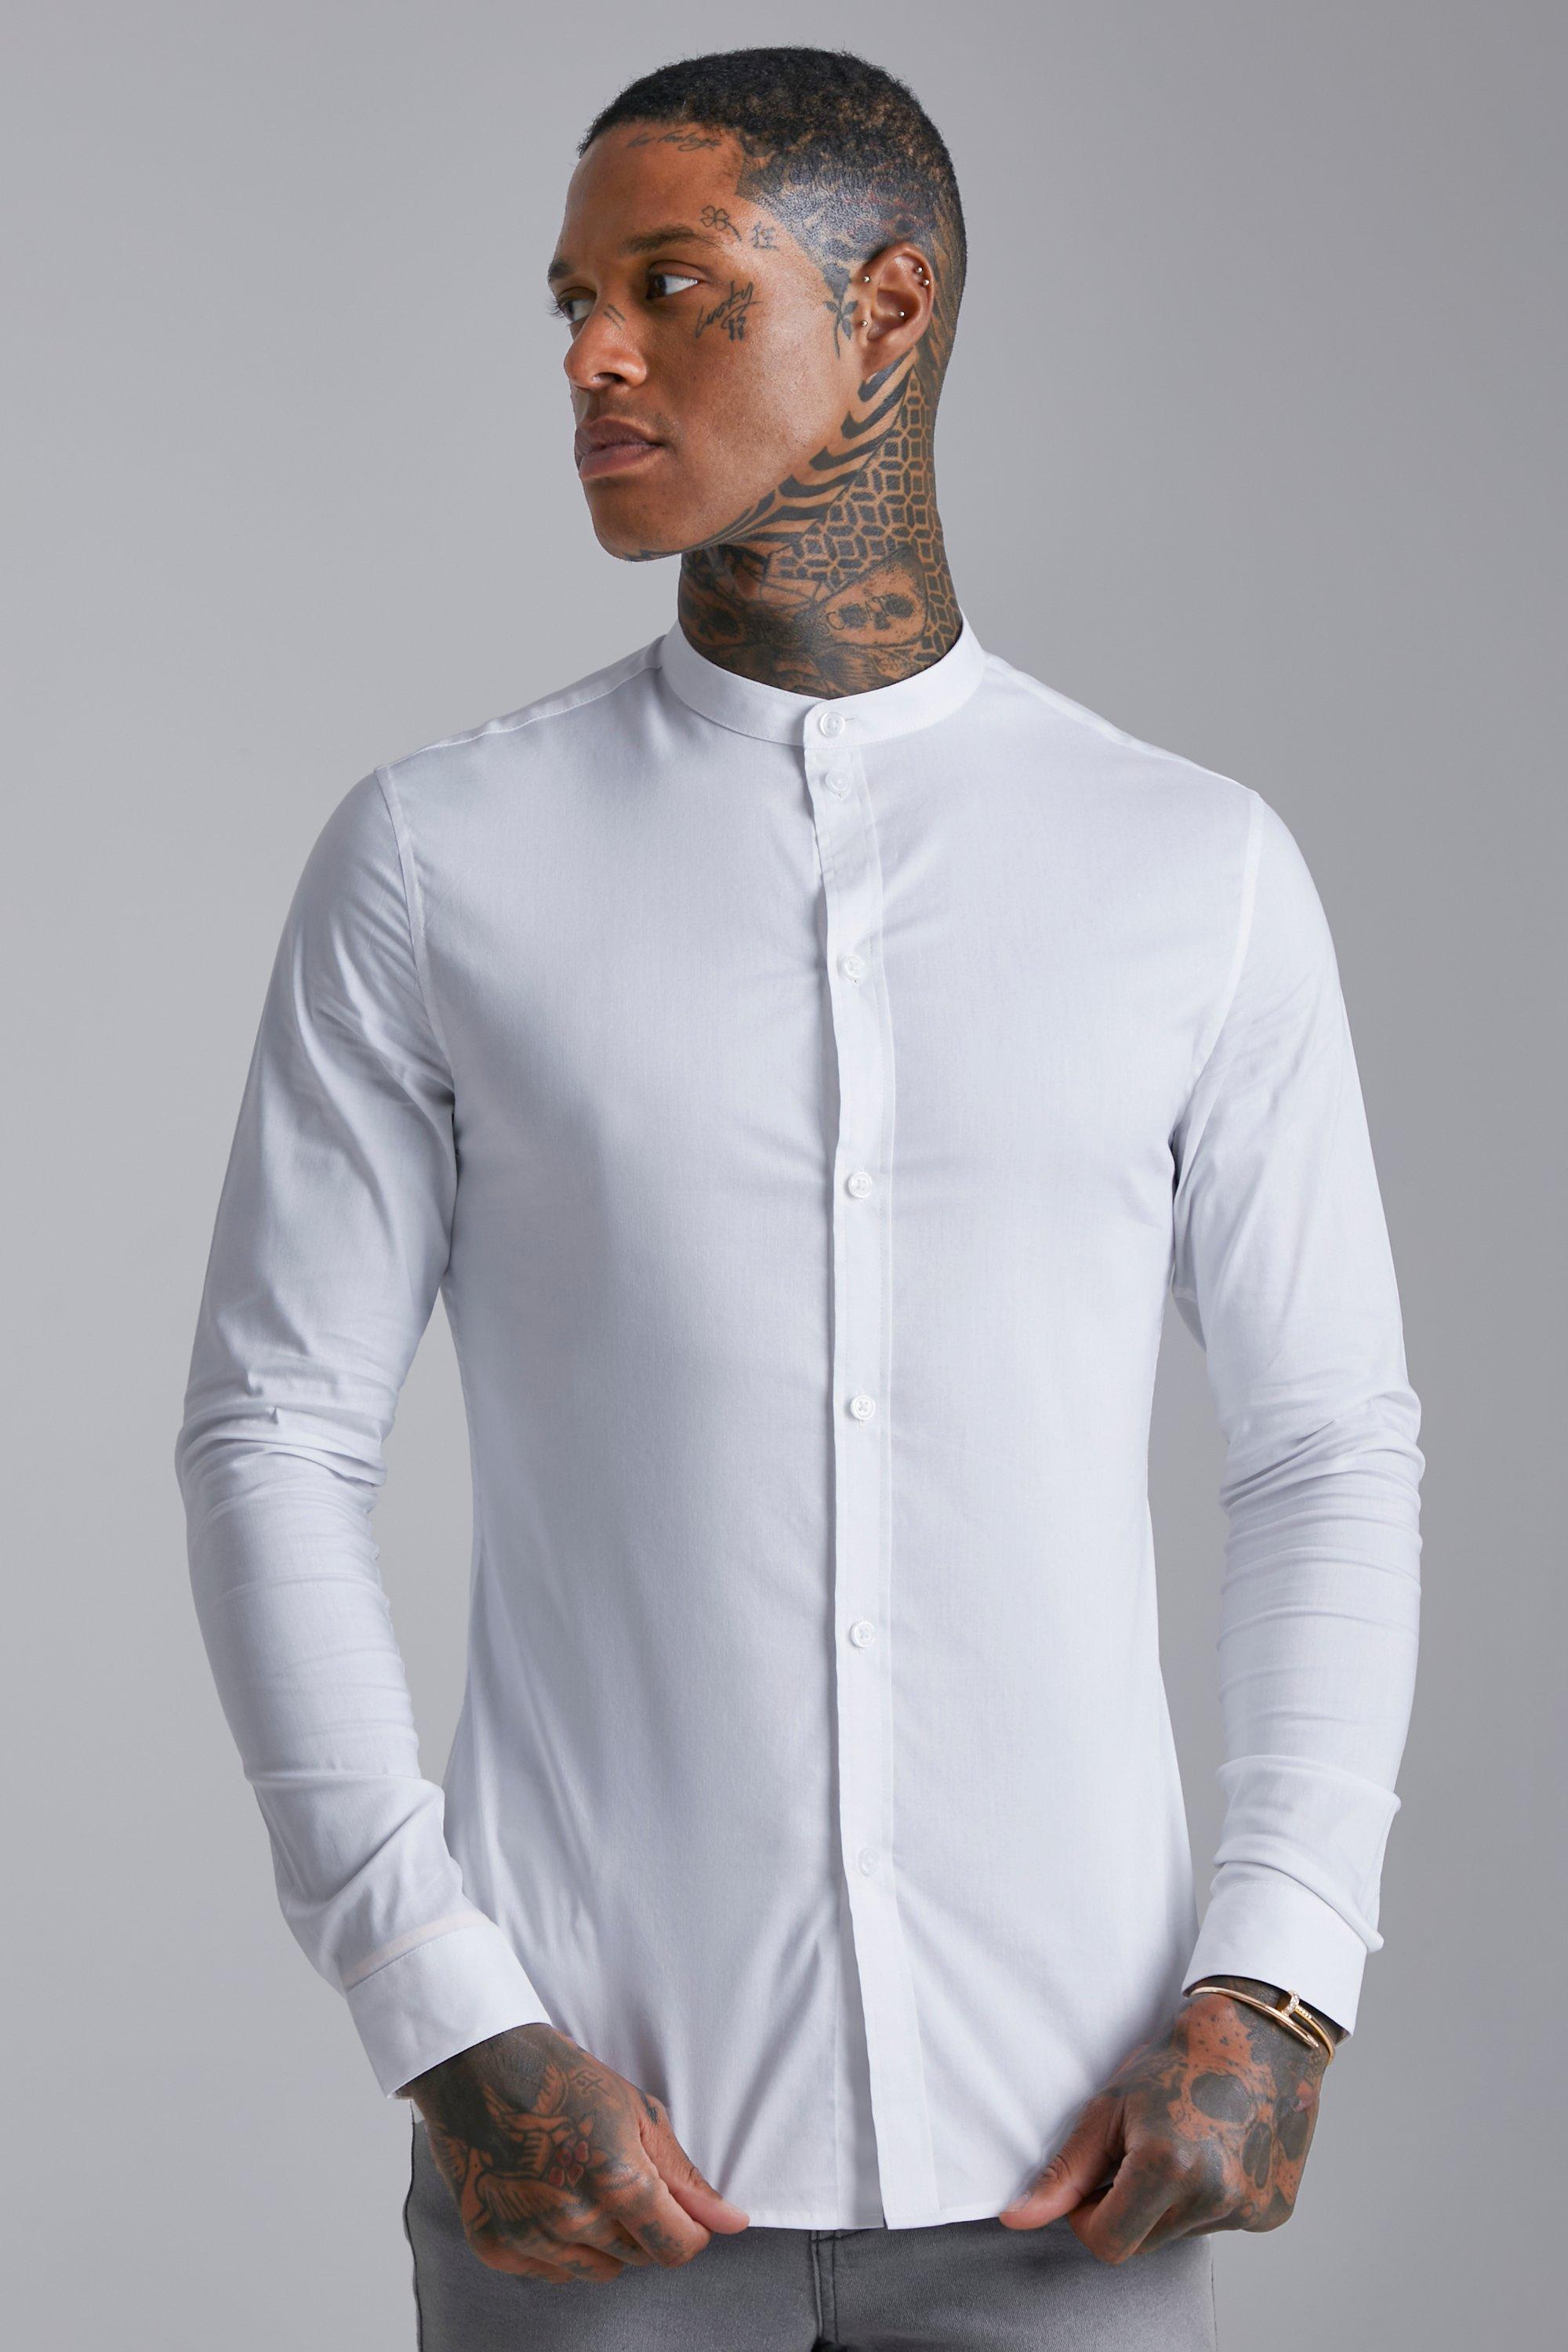 Men's White Shirts